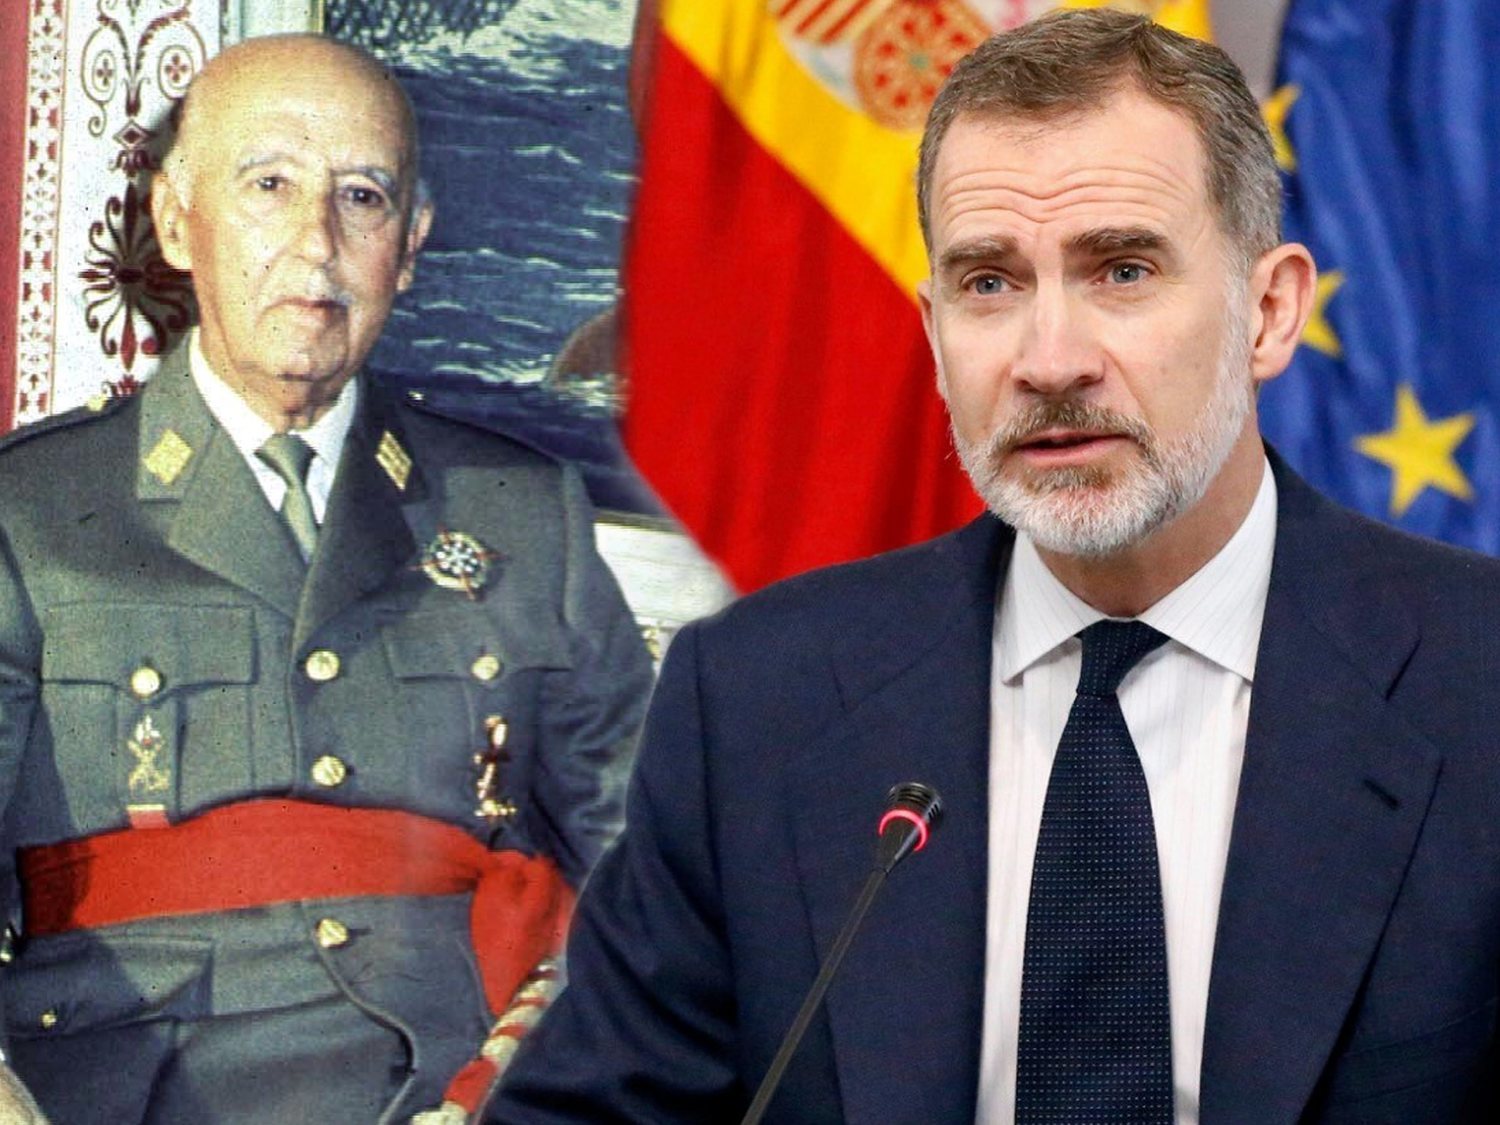 La Fundación Francisco Franco le recuerda a Felipe VI que es rey gracias al dictador